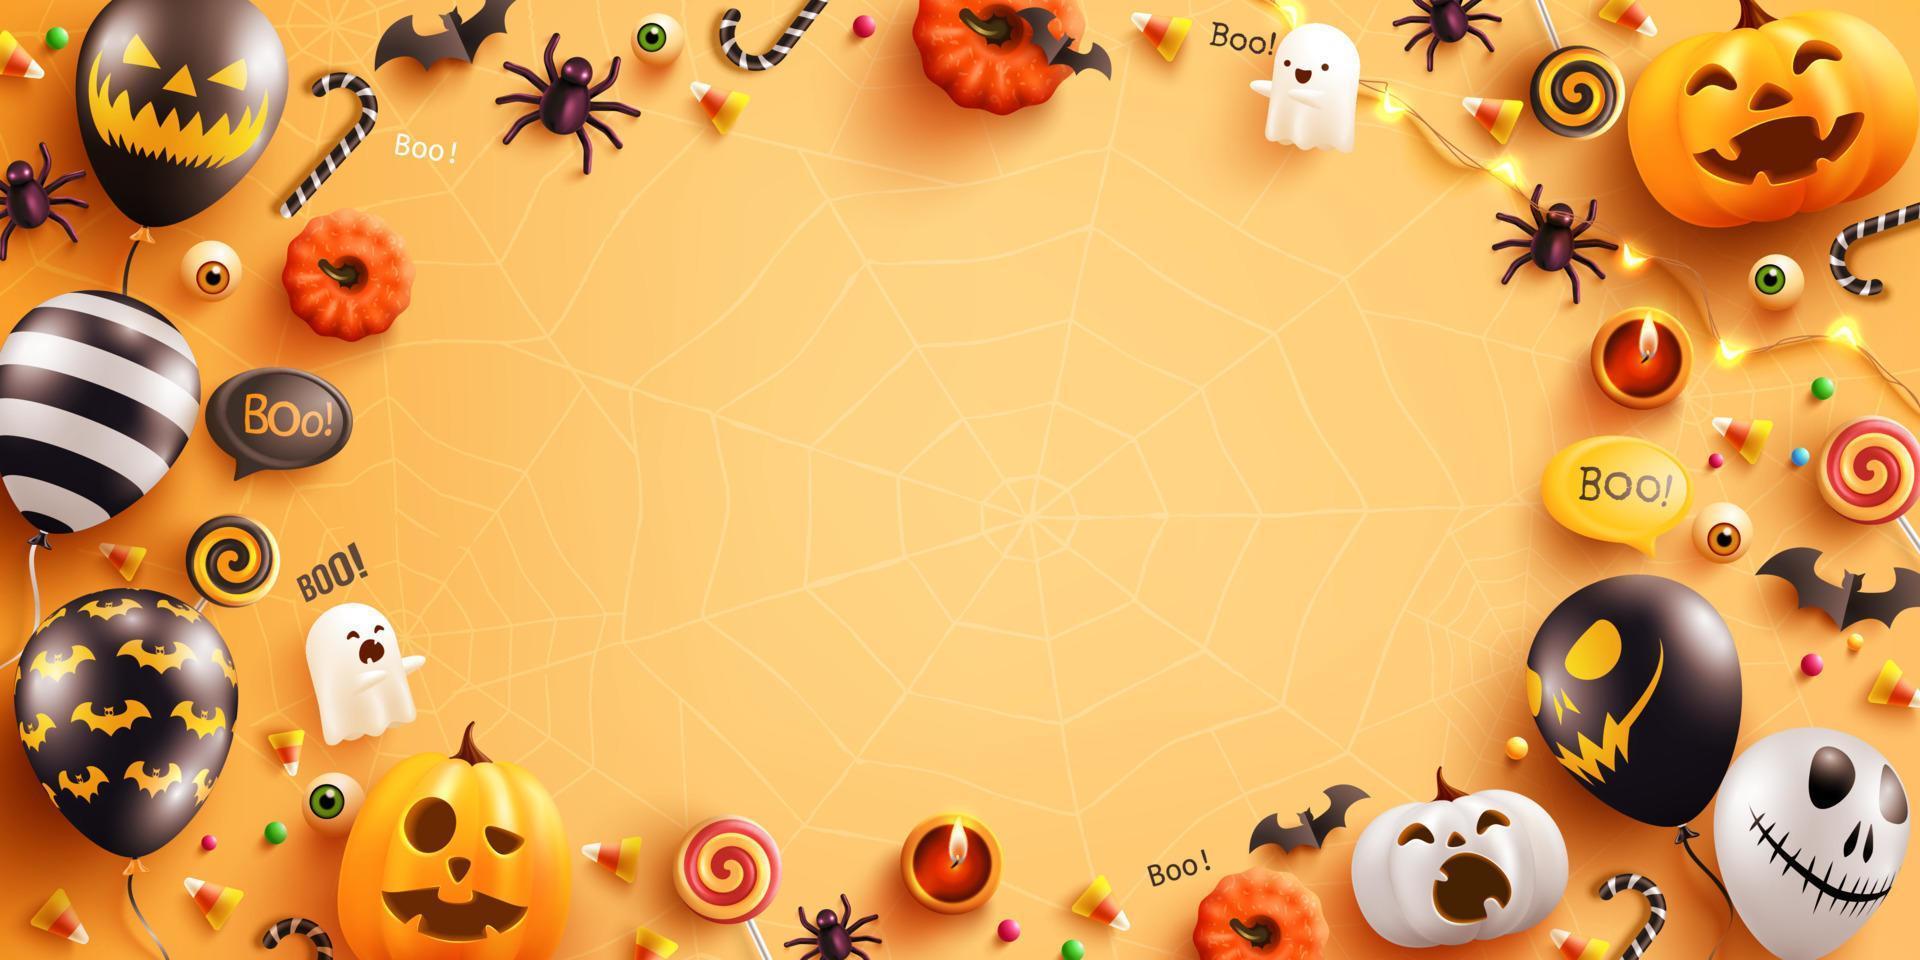 bakgrund för halloween med halloween spökballonger och pumpa. läskiga luftballonger, fladdermus, godis och halloween-element på gul bakgrund. webbplats spöklik, bakgrund eller banner halloween mall vektor